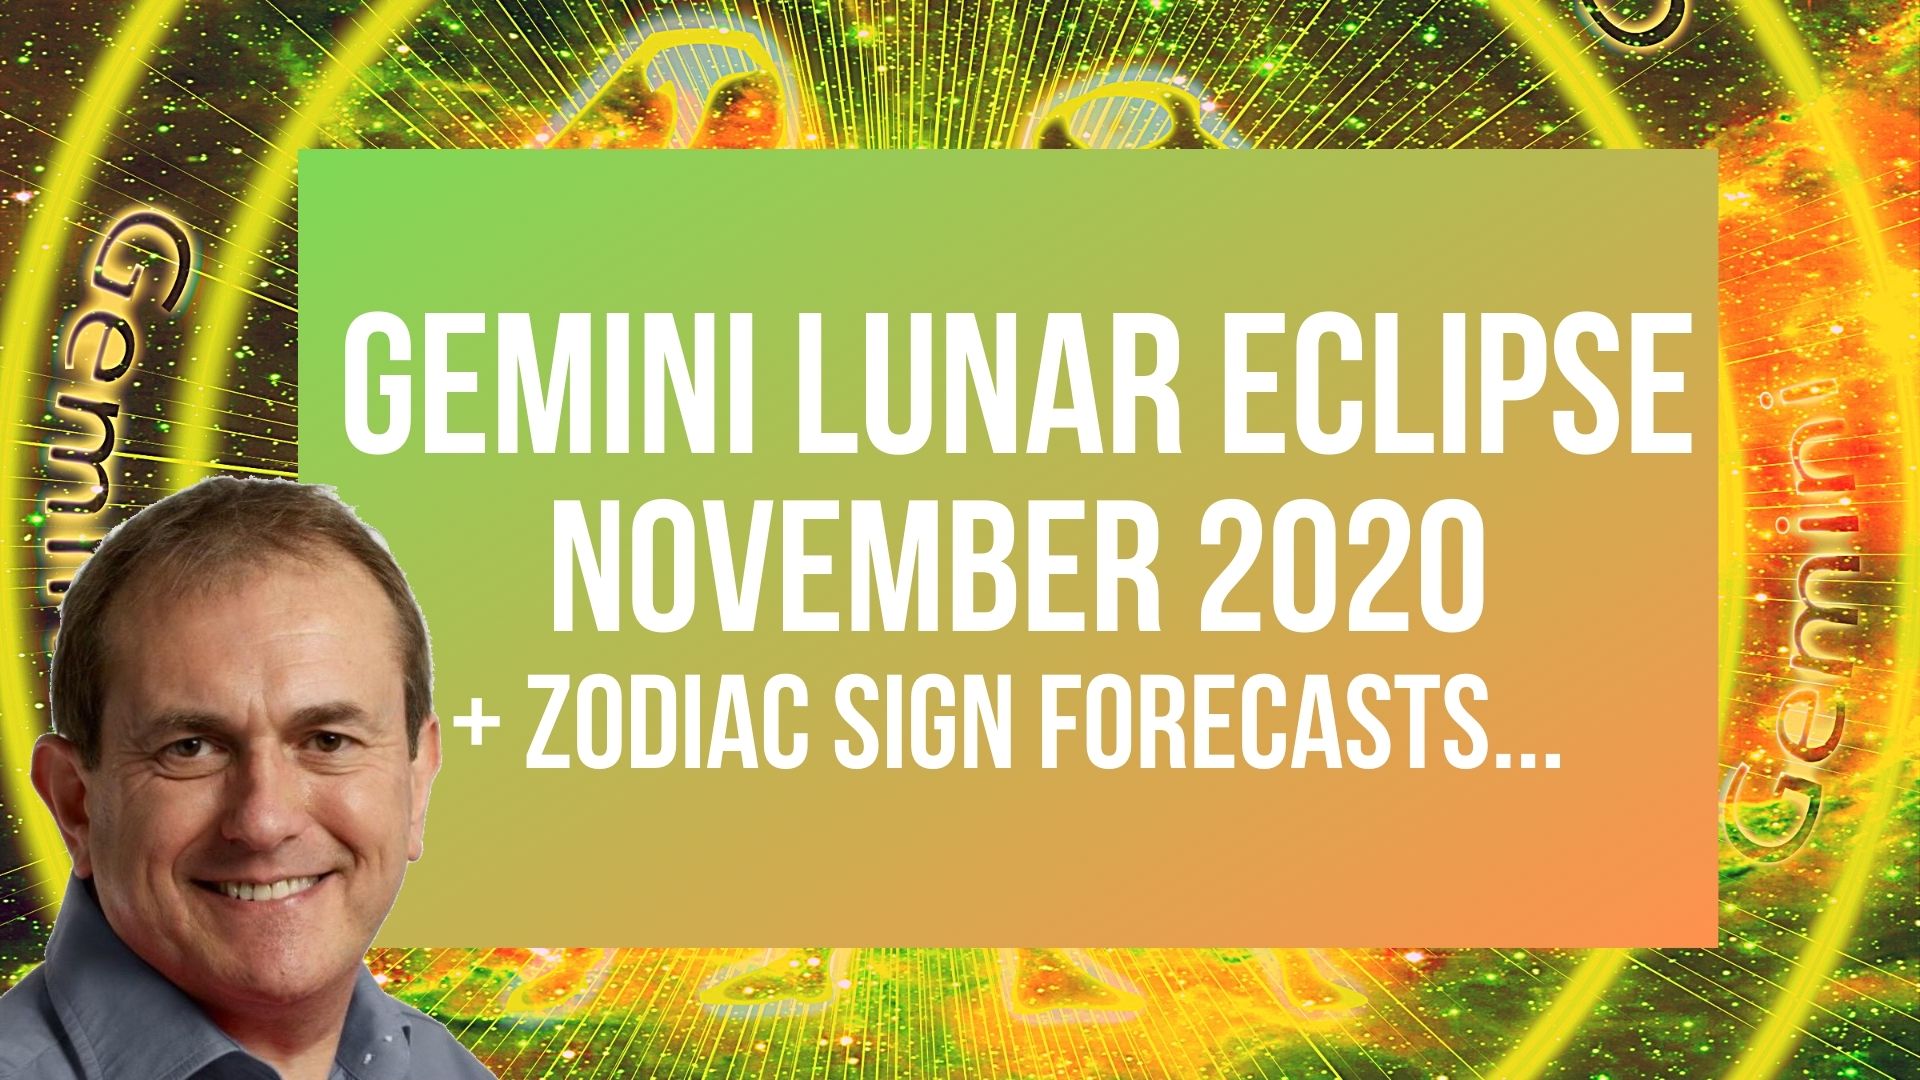 Gemini Lunar Eclipse + Zodiac Sign Forecasts...